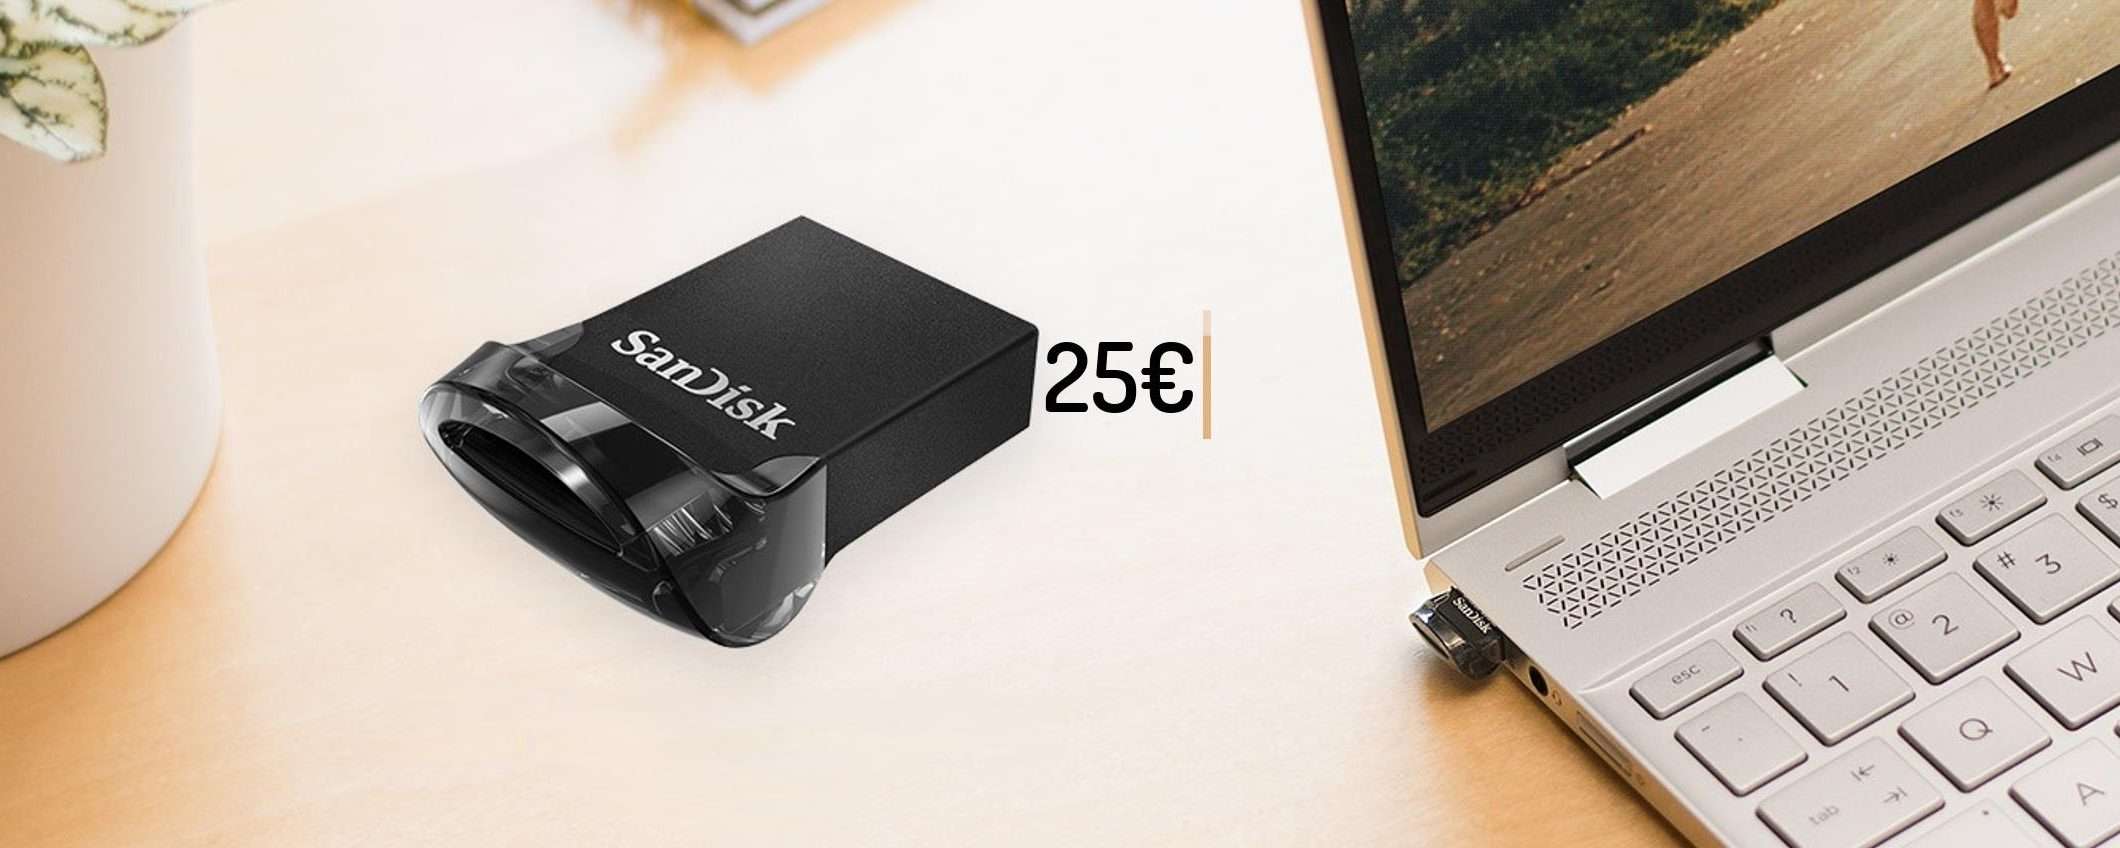 Chiavetta USB 256GB: velocissima e grande quanto una moneta